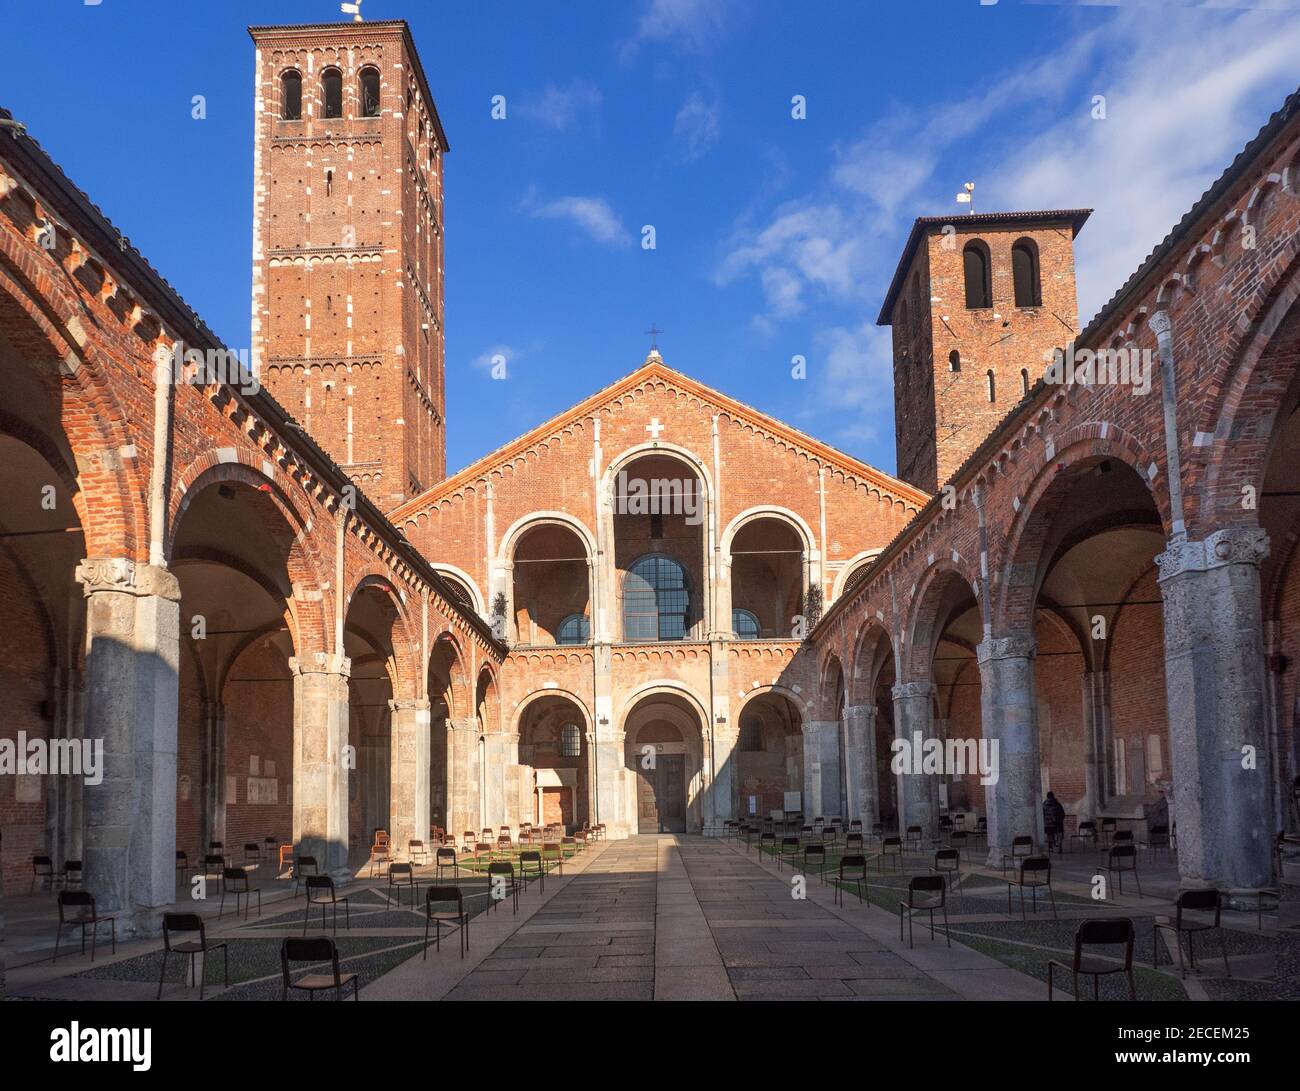 Antica chiesa romanica fondata dal vescovo Ambrogio nel IV secolo.Sant'Ambrogio, Milano, Lombardia, Italia. Foto Stock